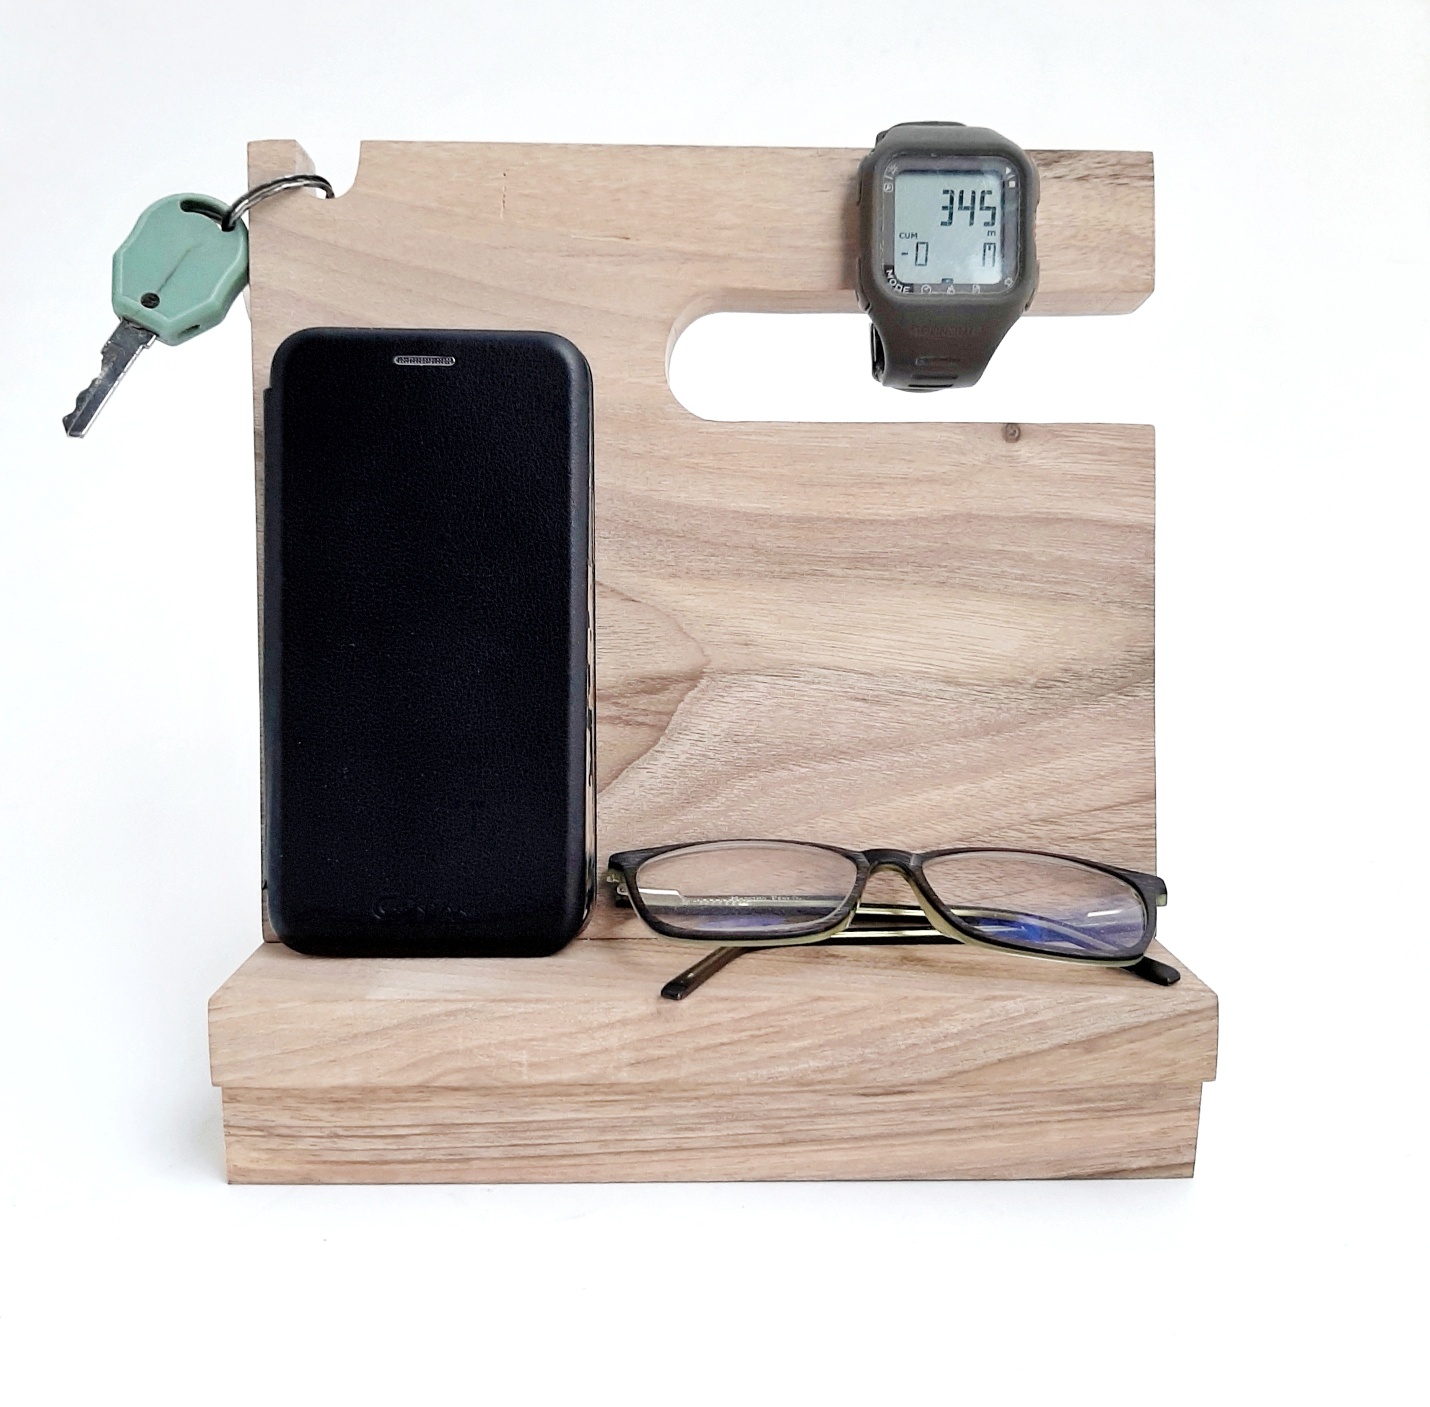 Suport multifuncțional pentru telefon, ceasuri, ochelari și chei